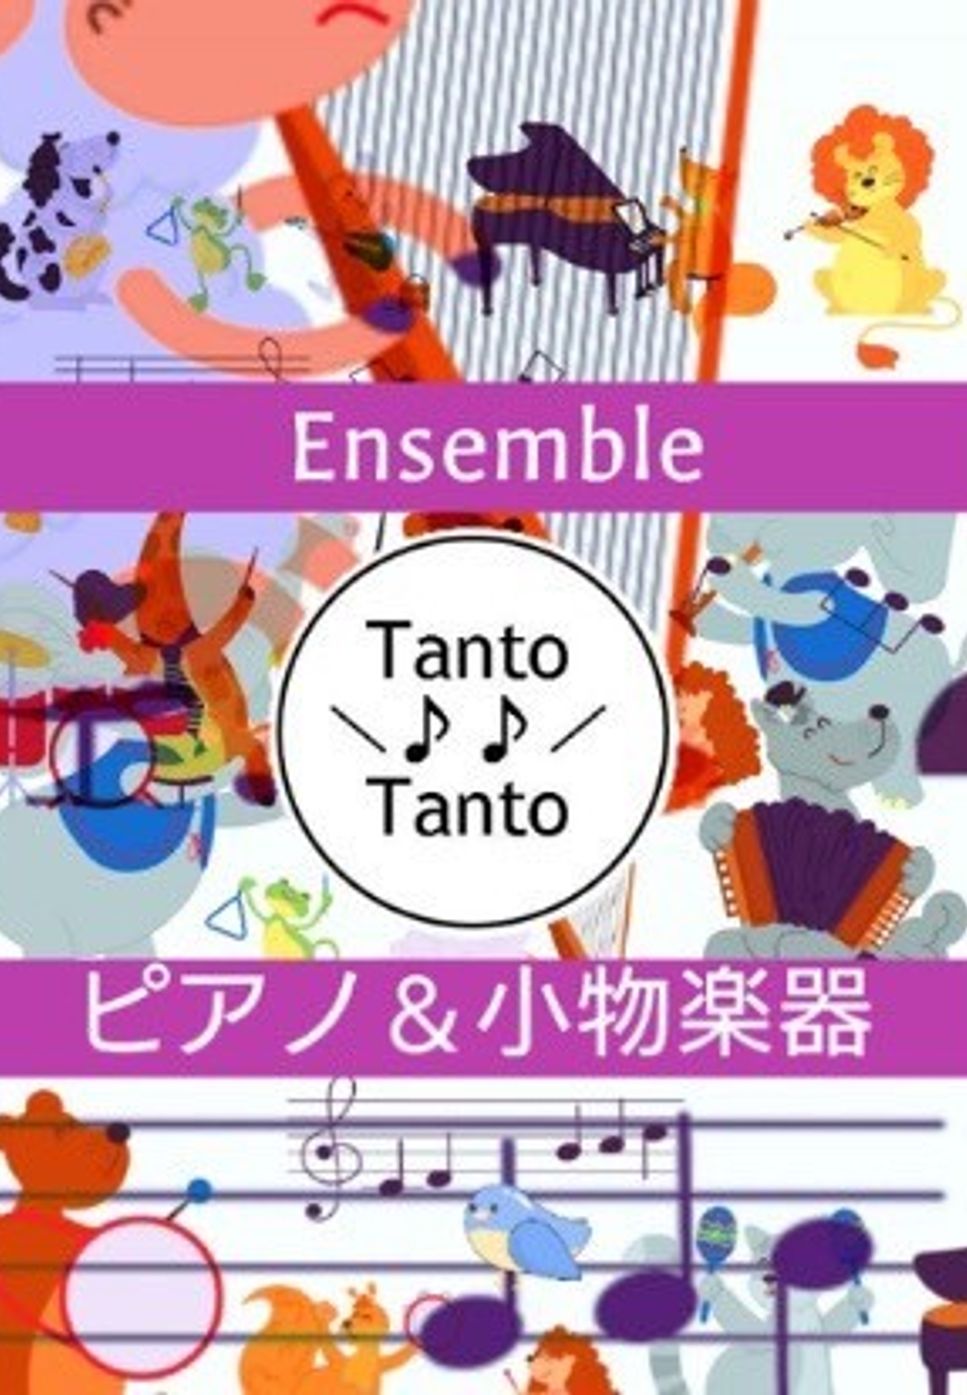 リー・ハーライン - 星に願いを When You Wish Upon a Star (初中級Piano Ensemble in F) by Tanto Tanto